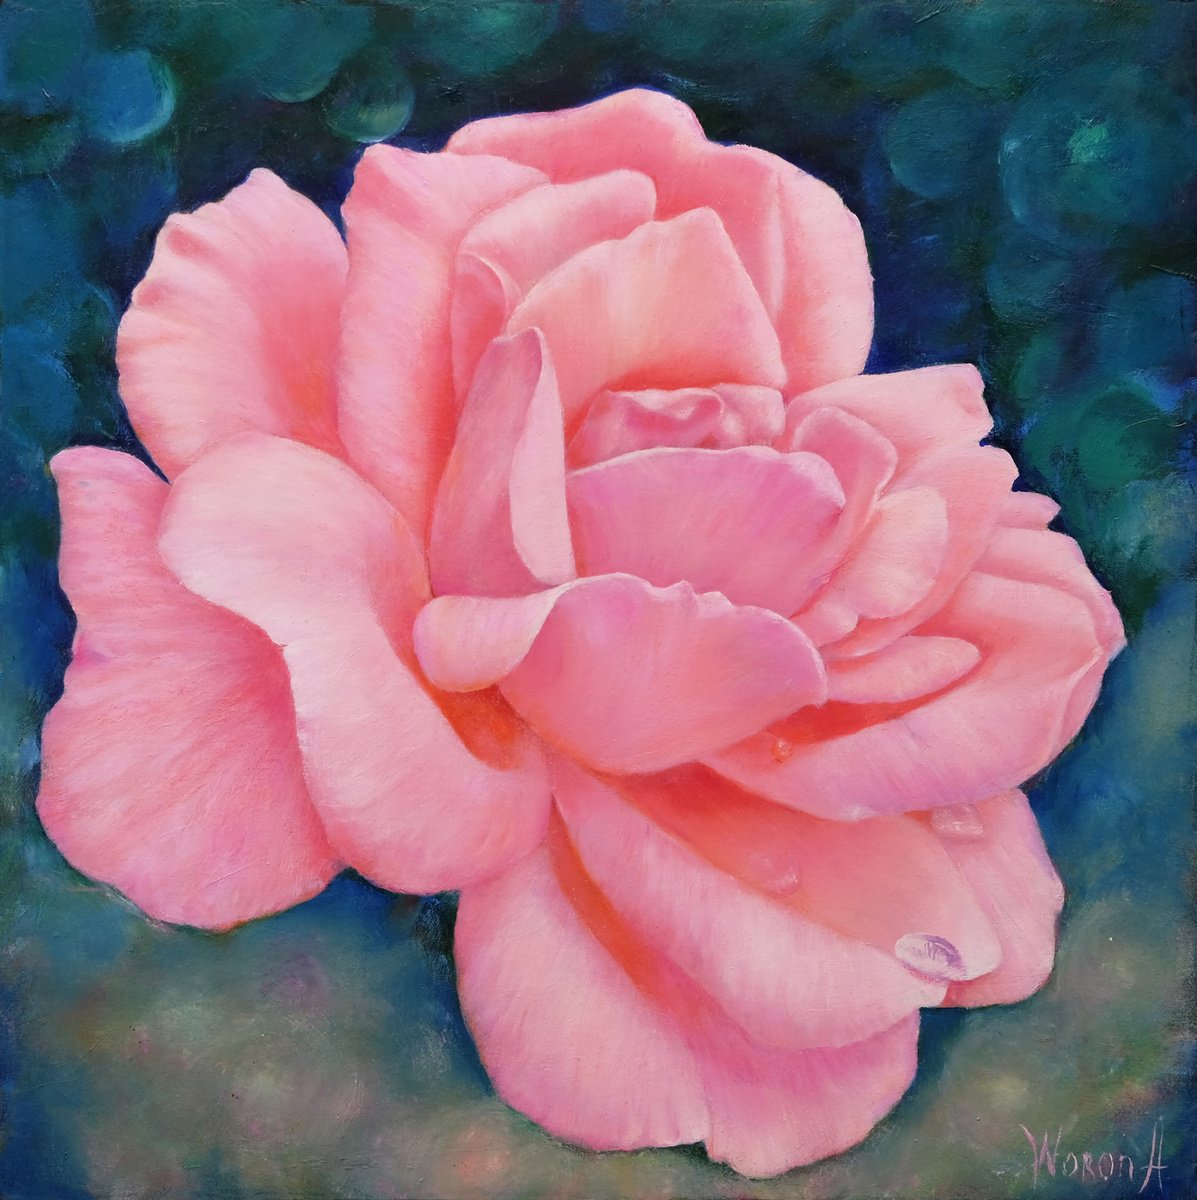 ROSE. PINK ROSE. by Anastasia Woron